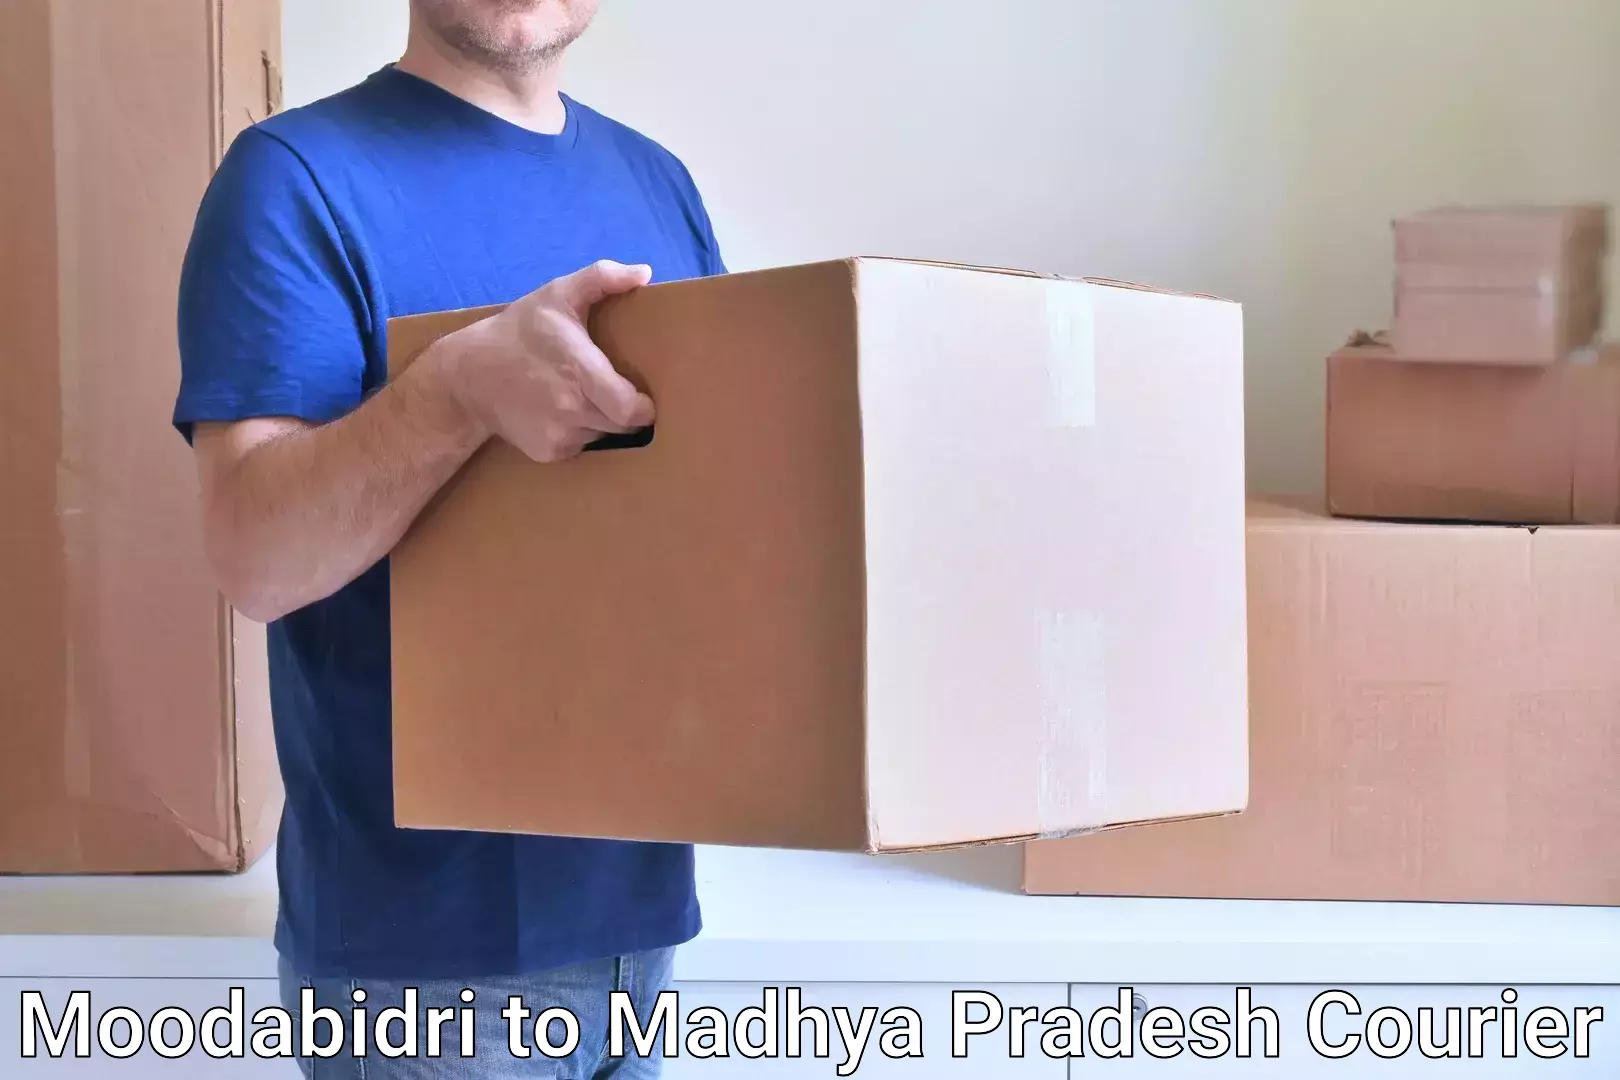 Pharmaceutical courier Moodabidri to Chand Chaurai